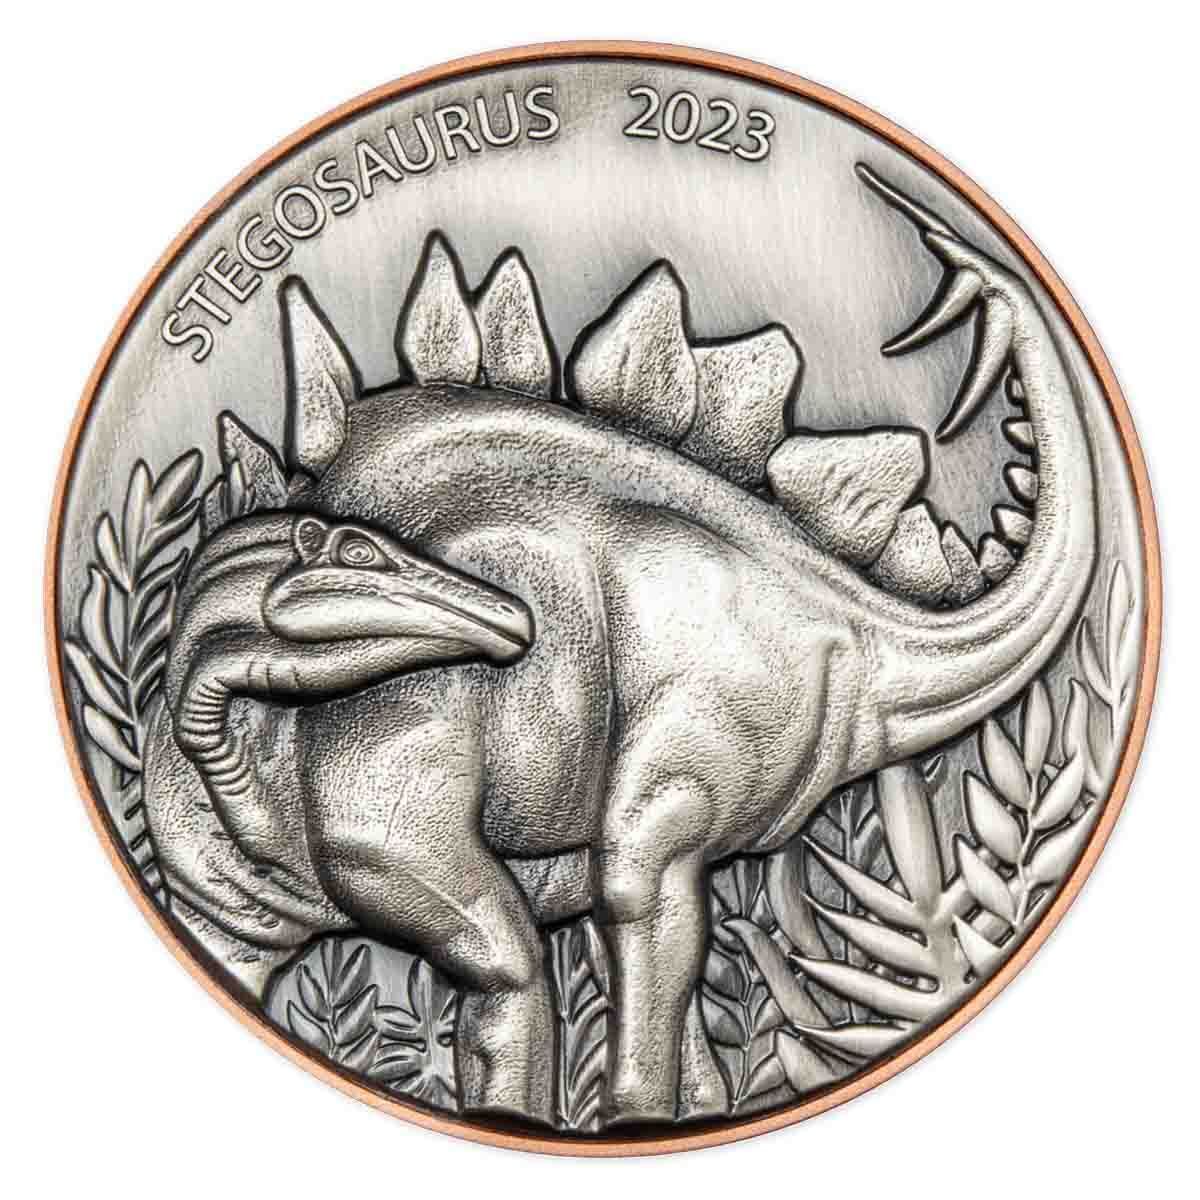 2023 10 Vatu Stegosaurus Bi-Metal Silver and Copper Antique Coin